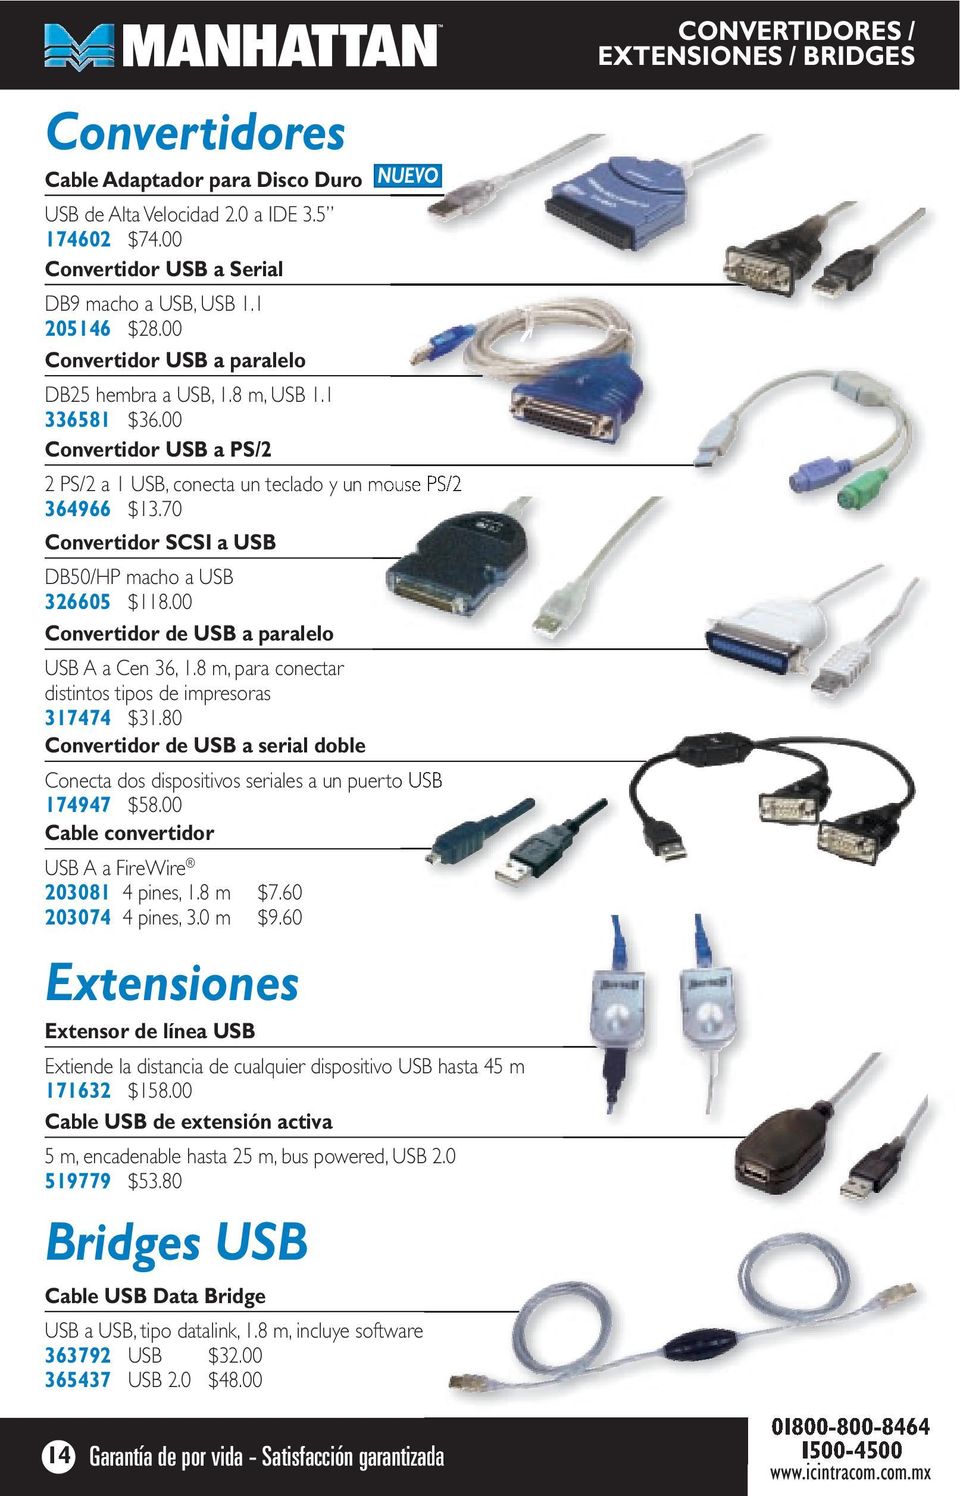 70 Convertidor SCSI a USB DB50/HP macho a USB 326605 $118.00 Convertidor de USB a paralelo USB A a Cen 36, 1.8 m, para conectar distintos tipos de impresoras 317474 $31.